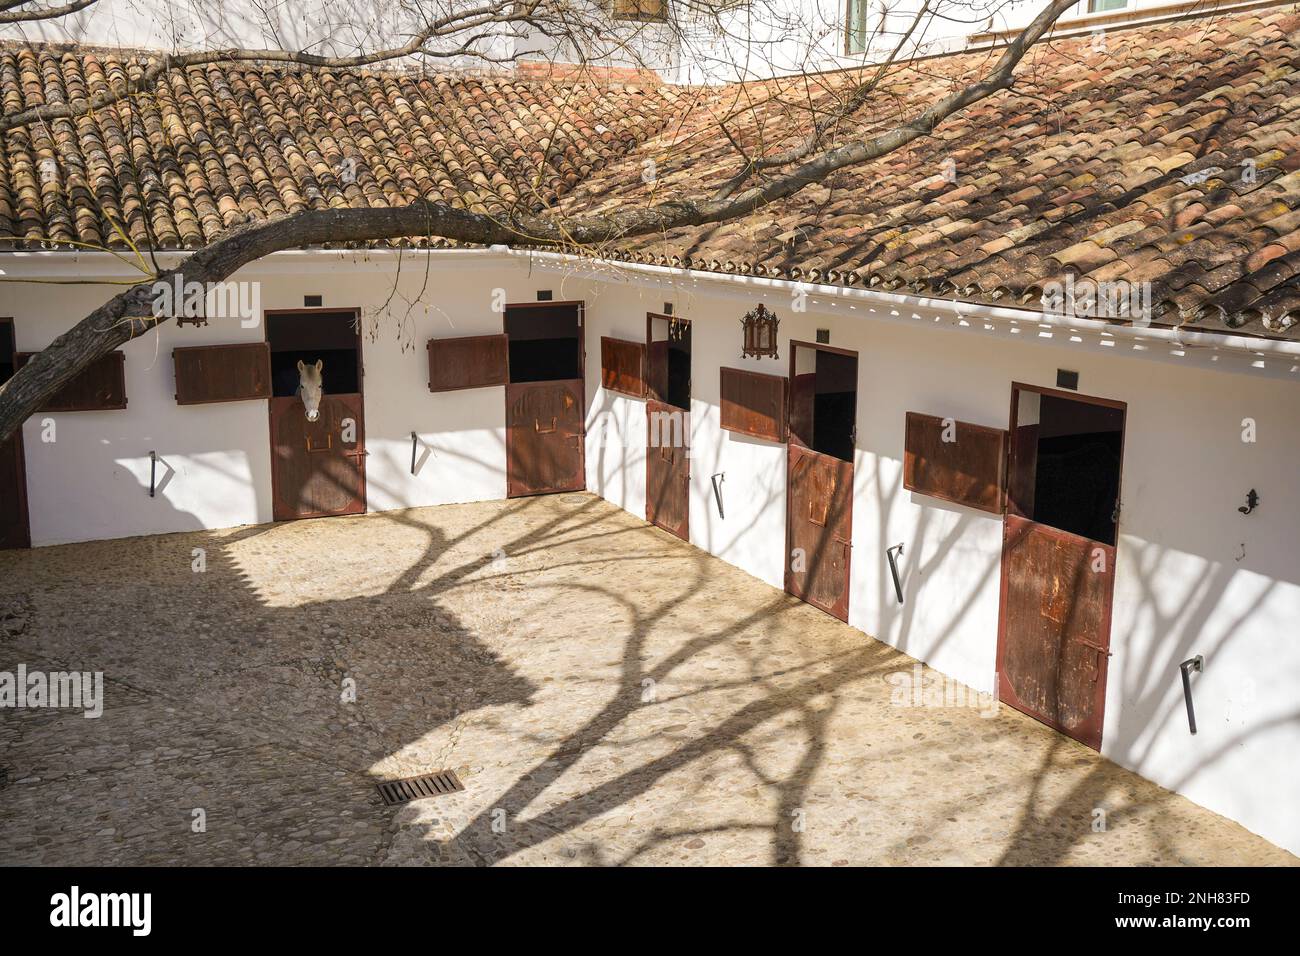 Royal Riding School, écuries à l'intérieur de l'arène de Ronda, province de Malaga, Andalousie, Espagne. Banque D'Images